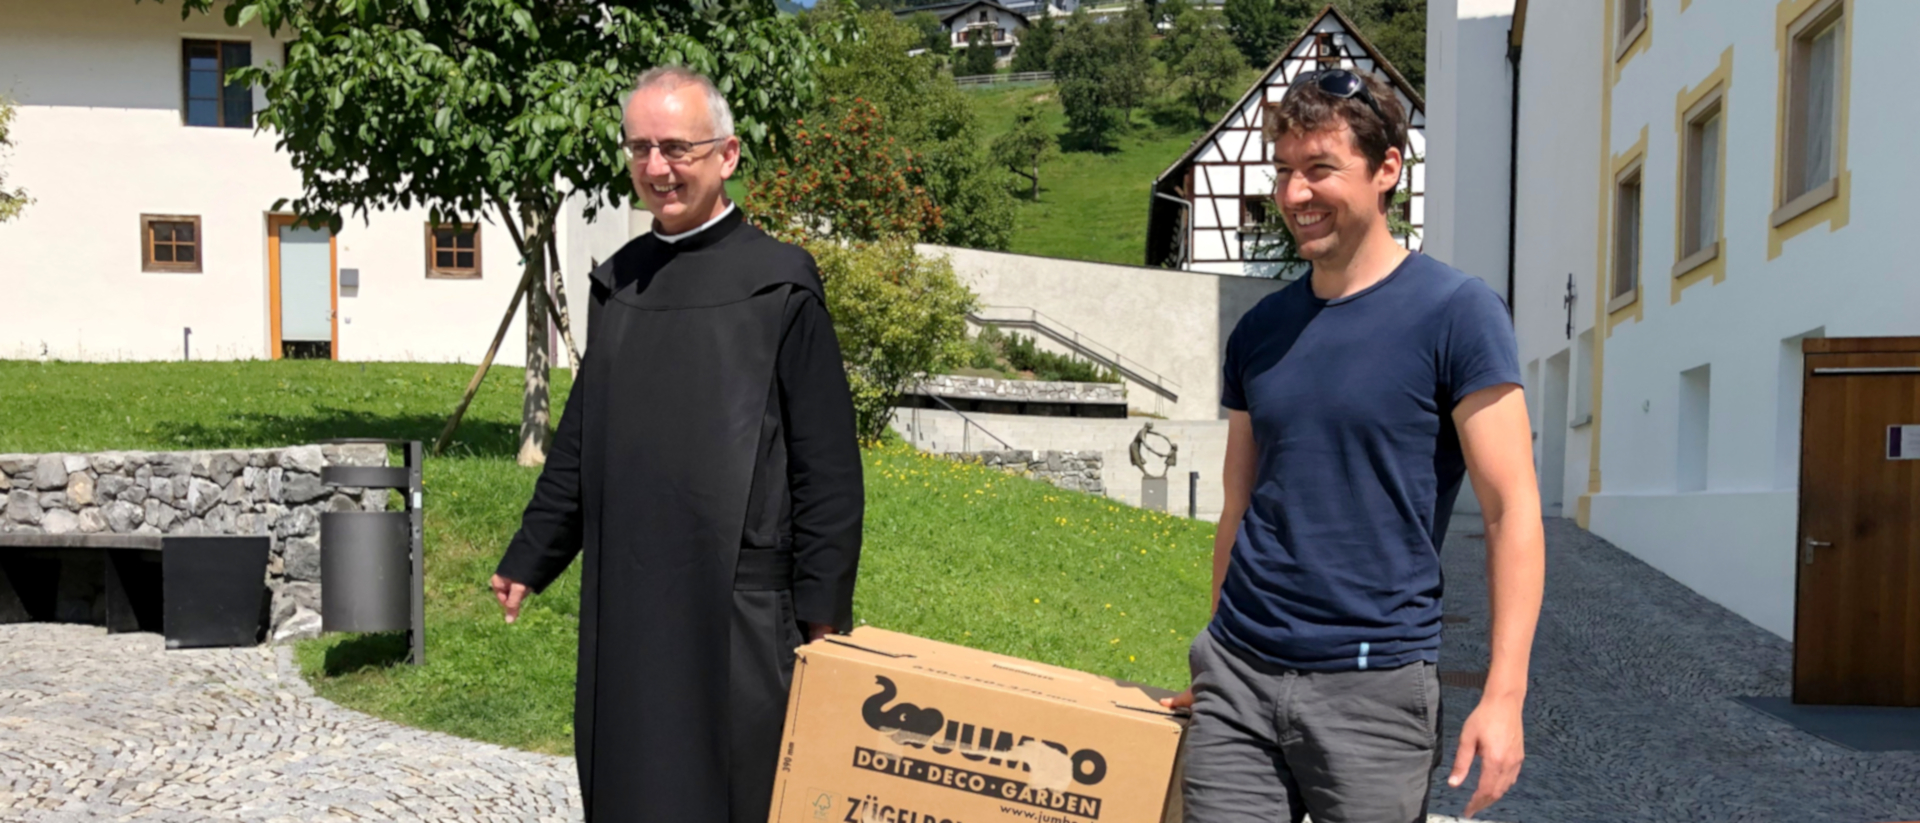 Martin Werlen (à gauche) à son arrivée au prieuré de Saint-Gerold (Autriche), le 12 août 2020 | © zVg